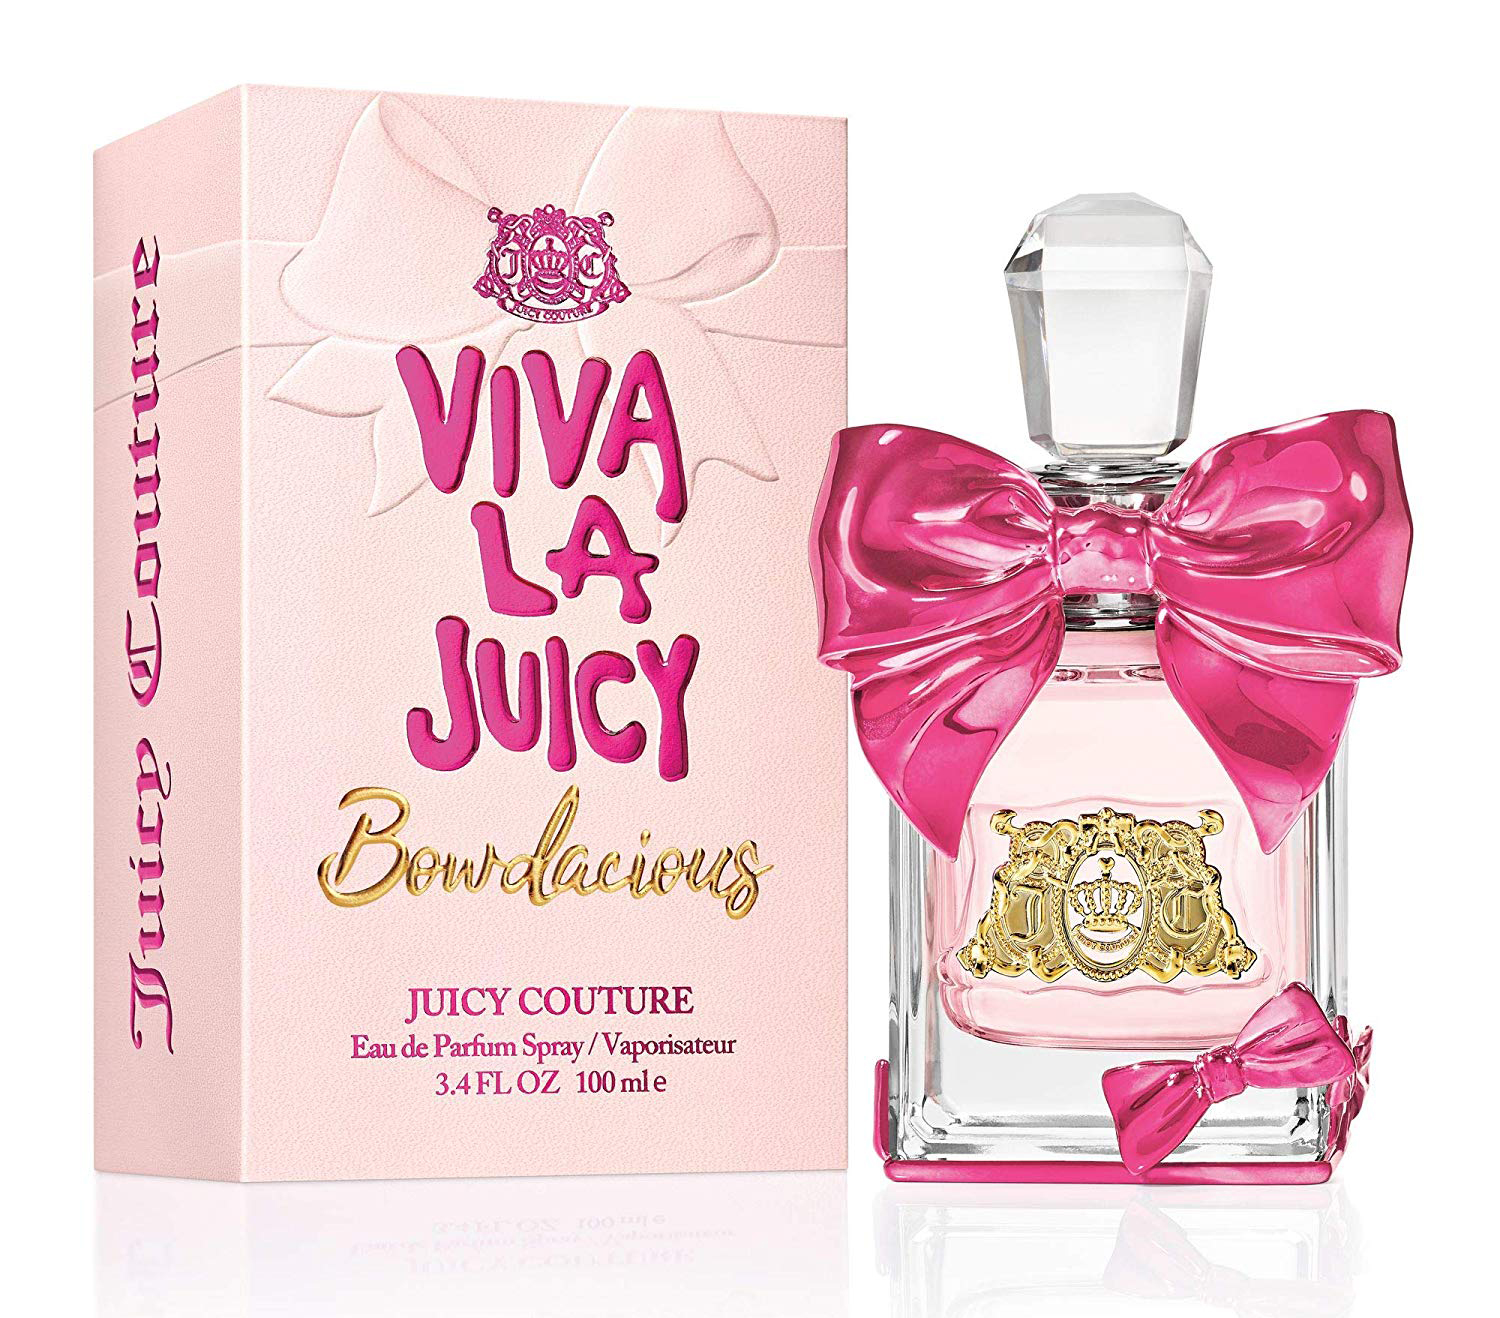 Viva La Juicy Bowdacious Juicy Couture parfum - un nouveau parfum pour